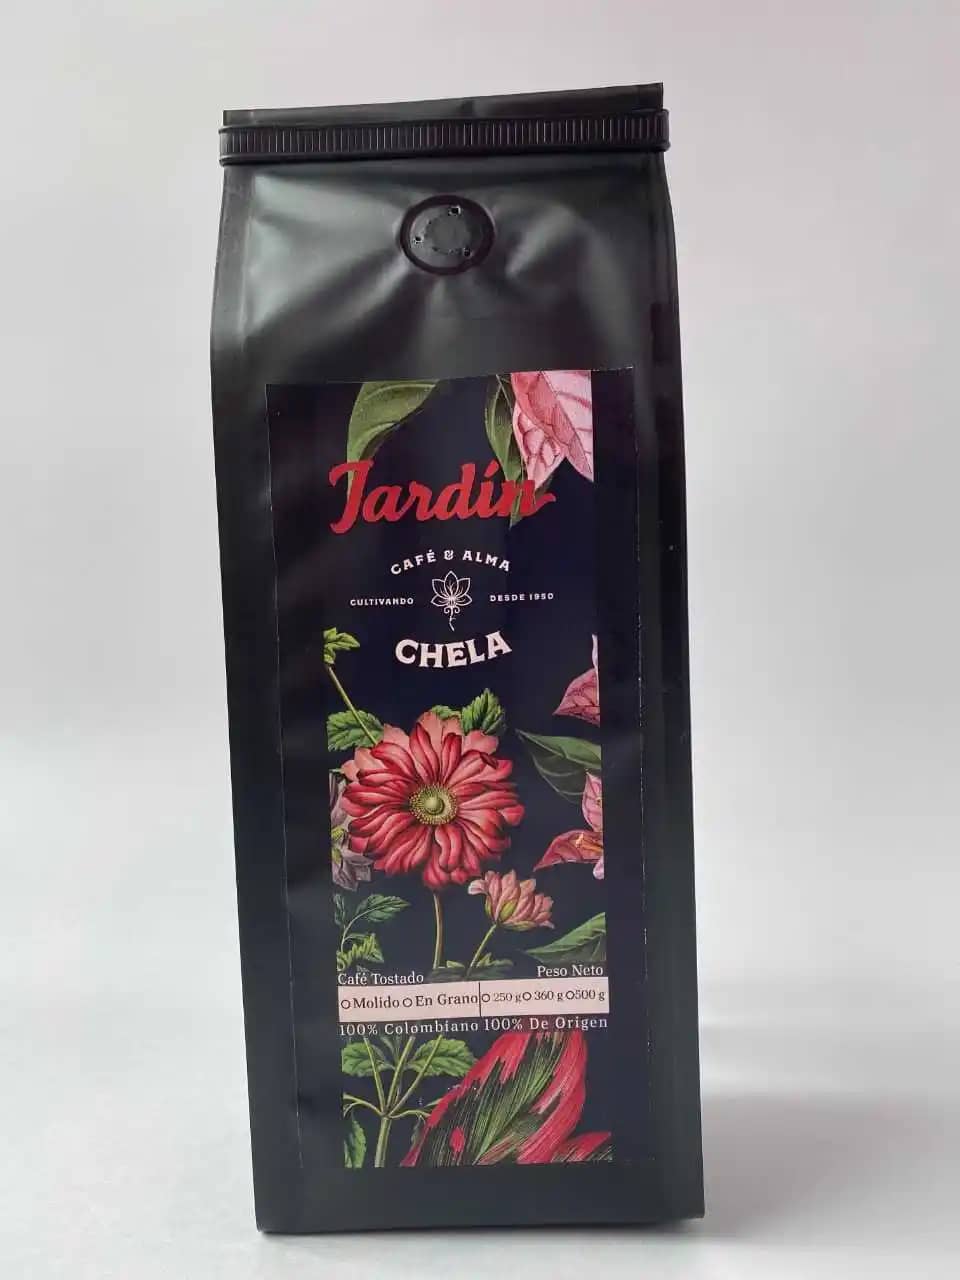 CHELA café tradicional 100% Colombiano 100 % de origen